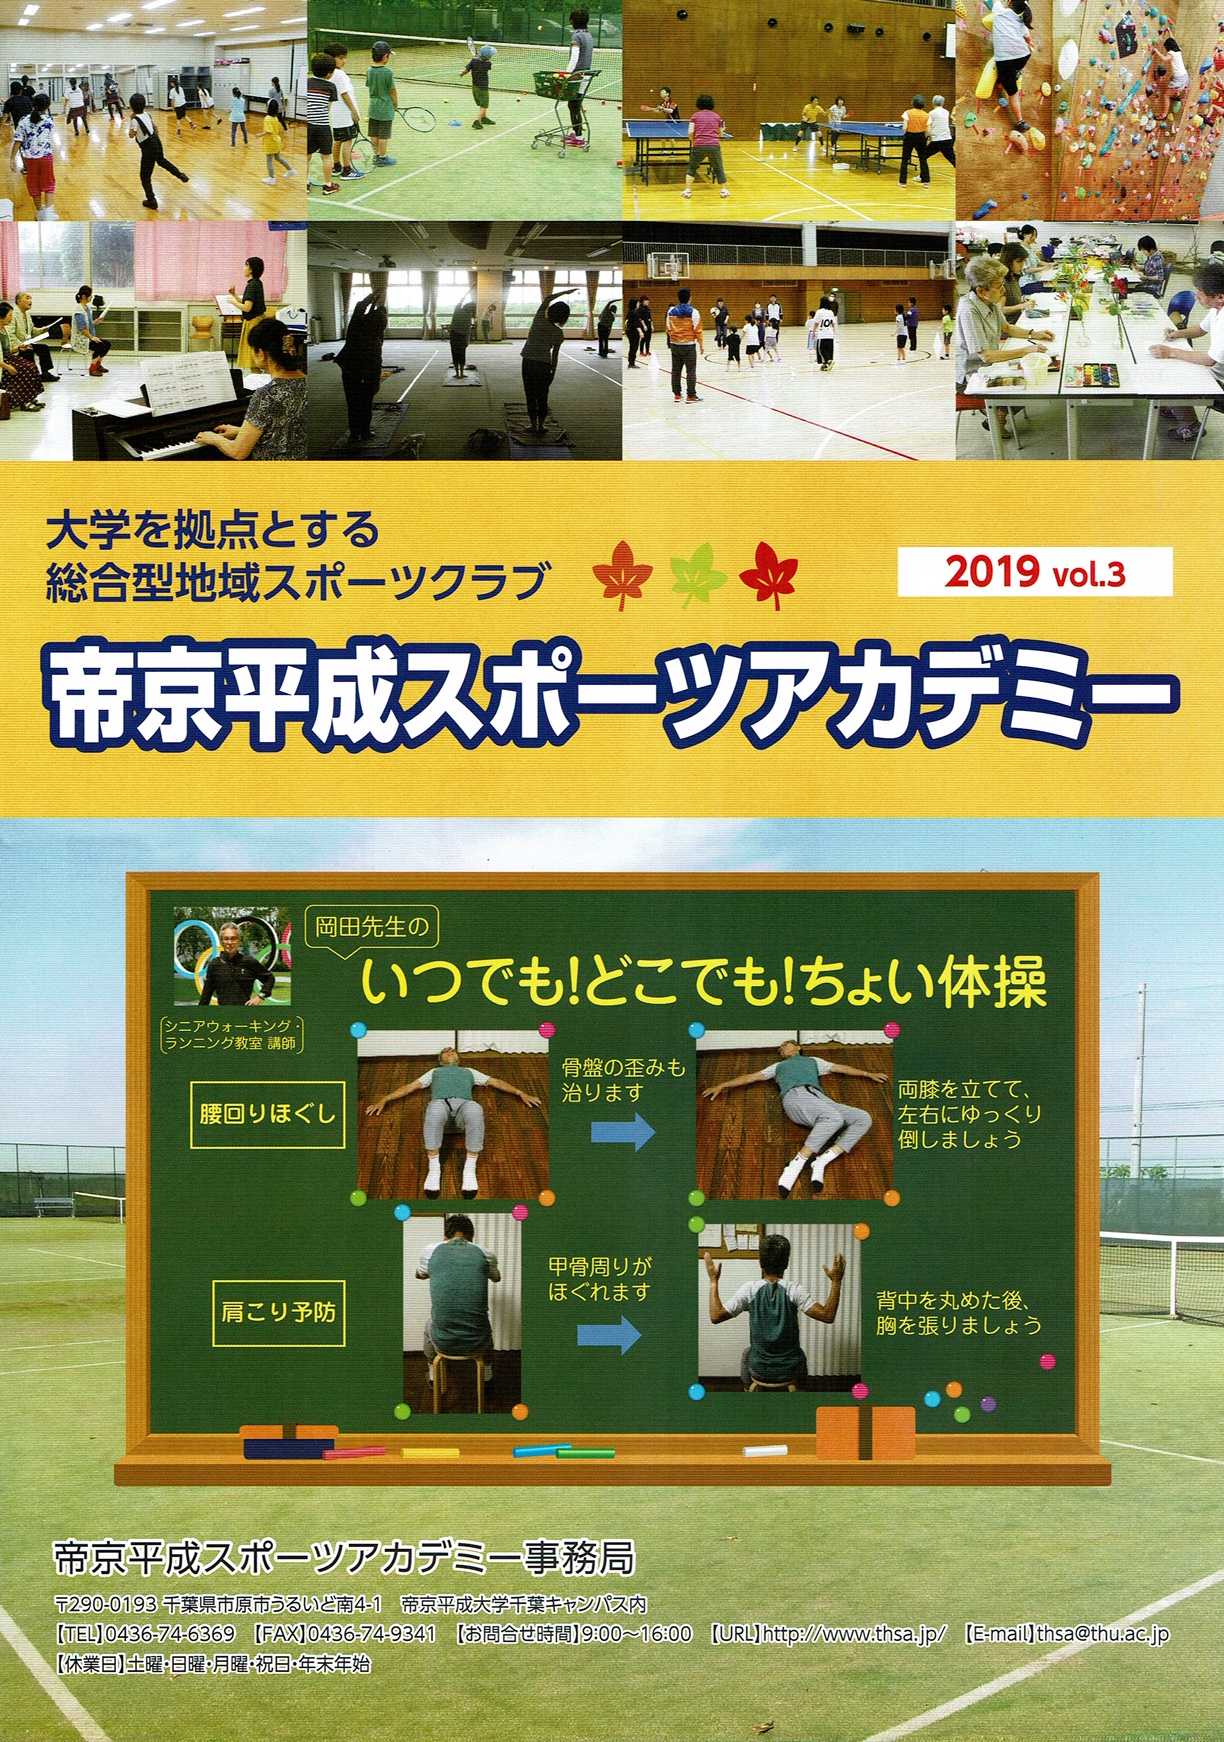 帝京平成スポーツアカデミー 2019 vol.3